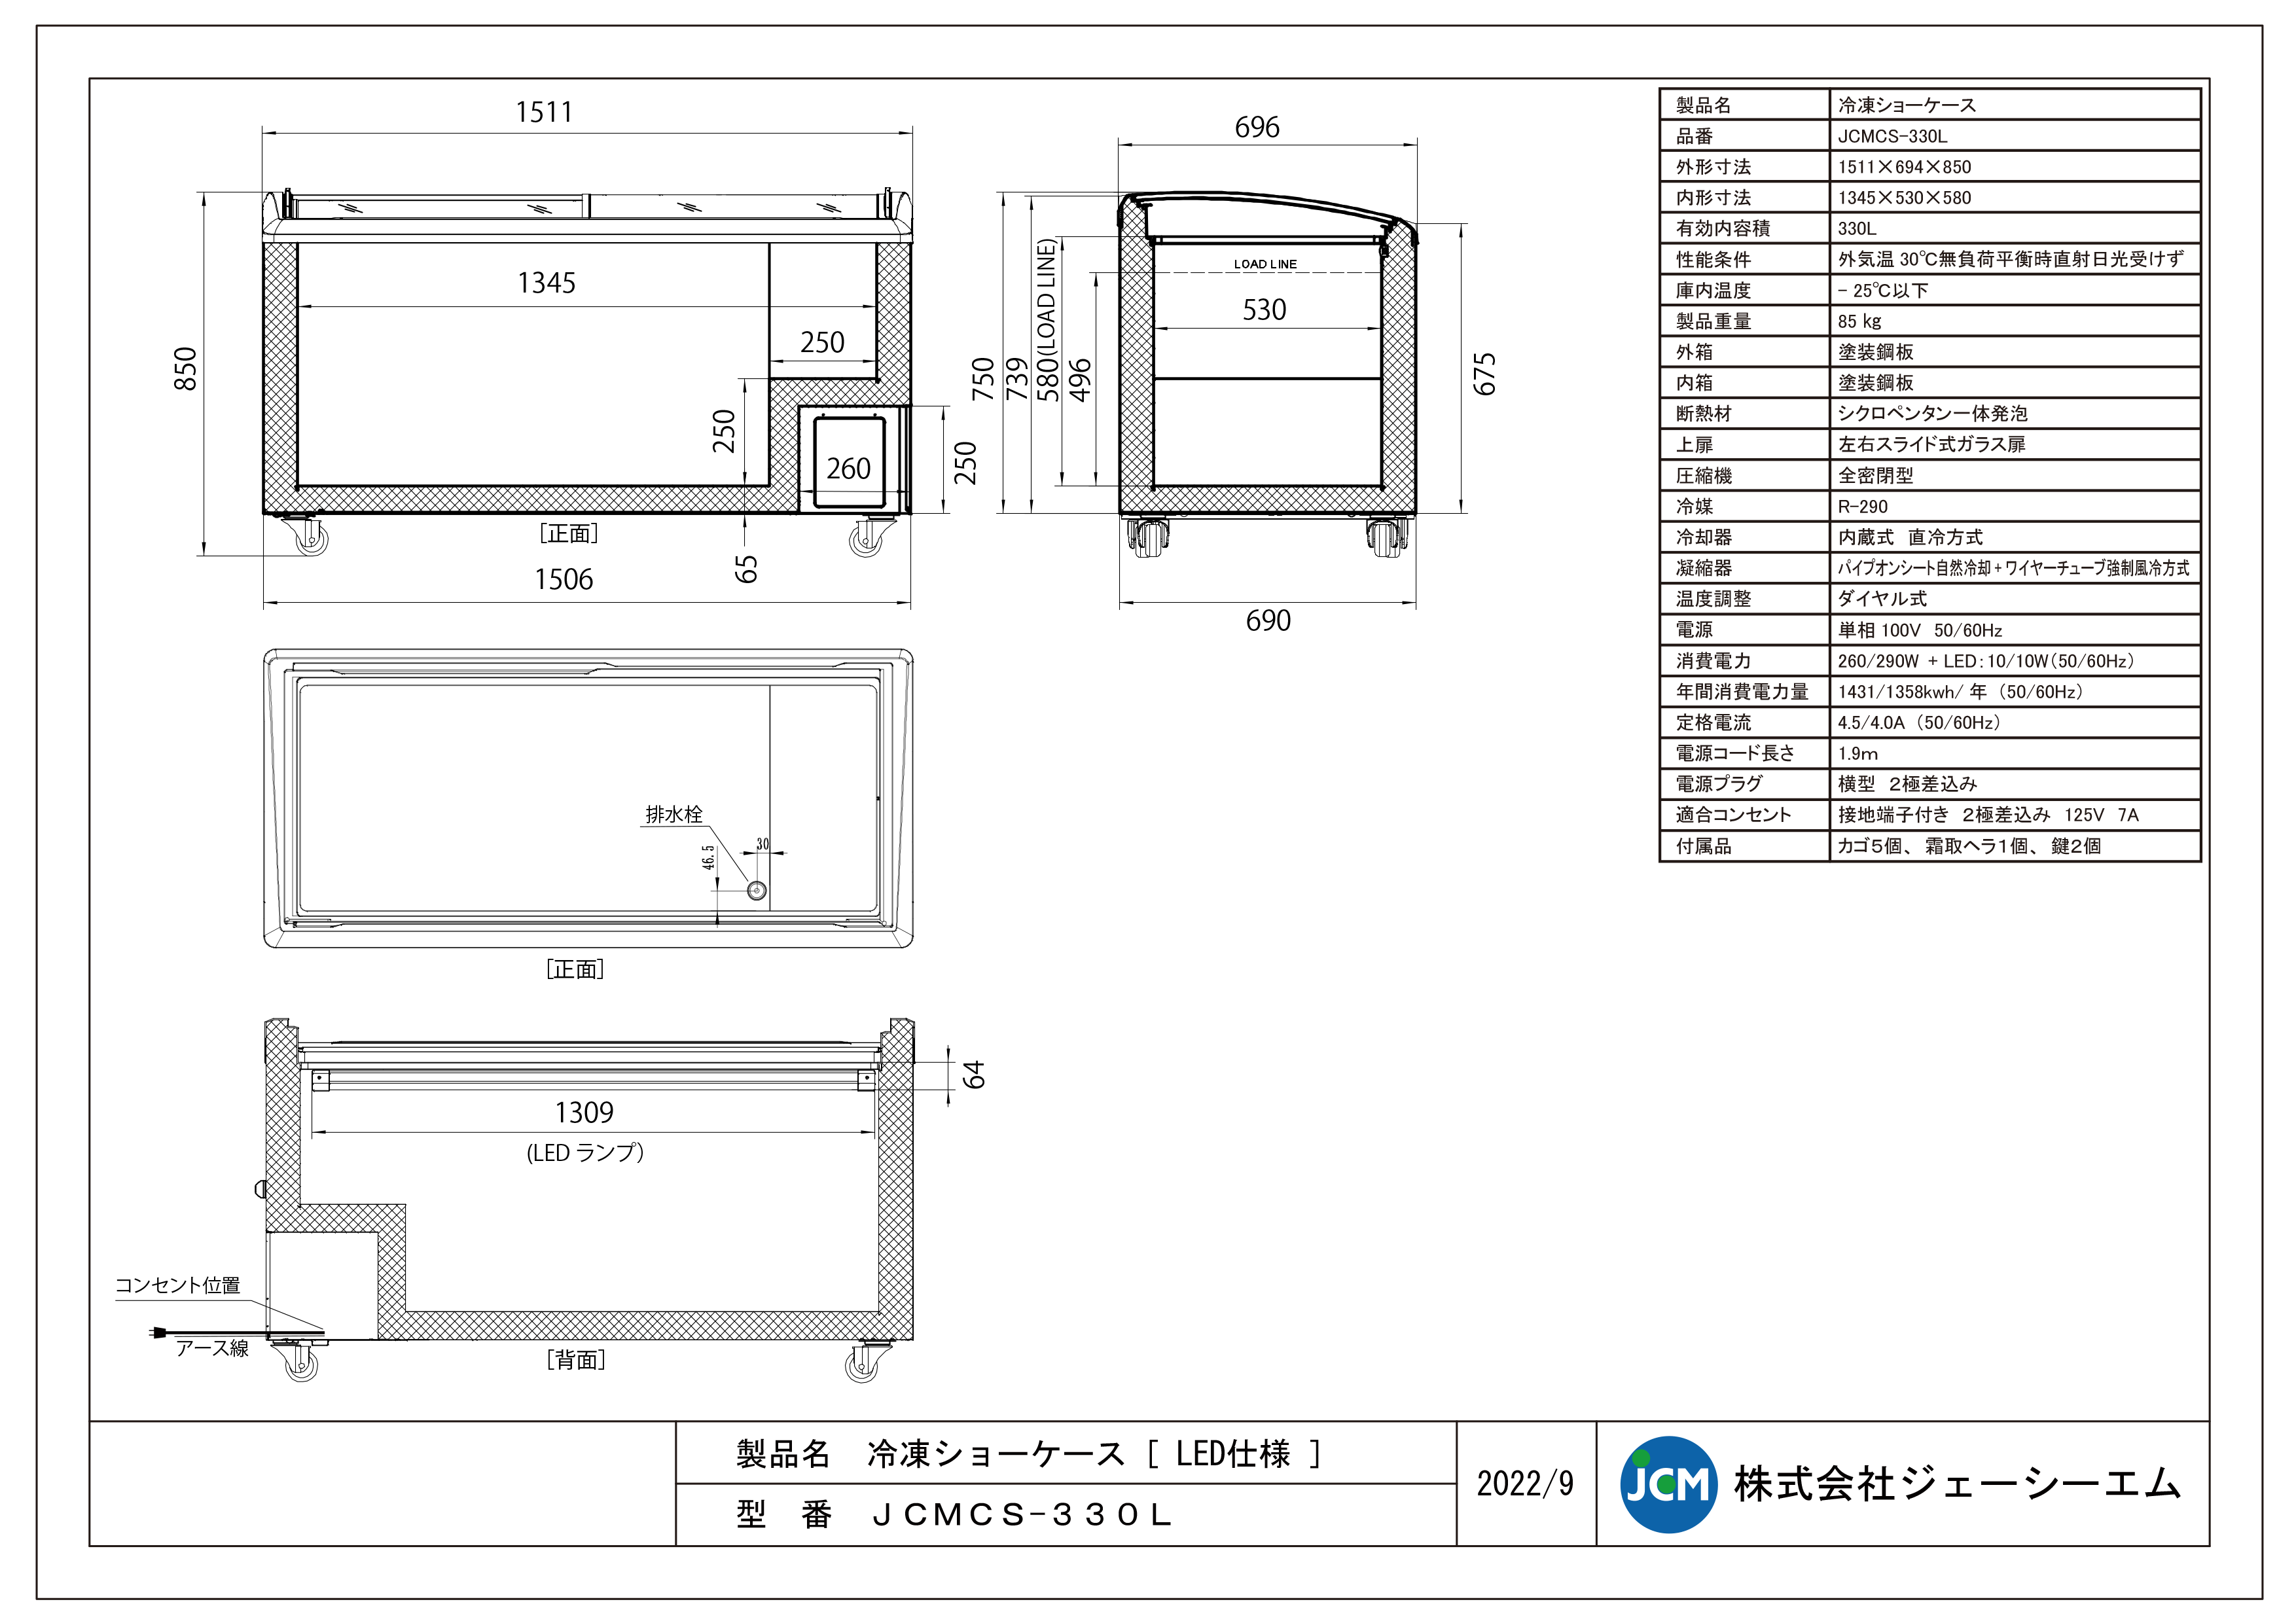 有限会社ユウキ / 【LED照明付】冷凍ショーケース『JCMCS-330L』